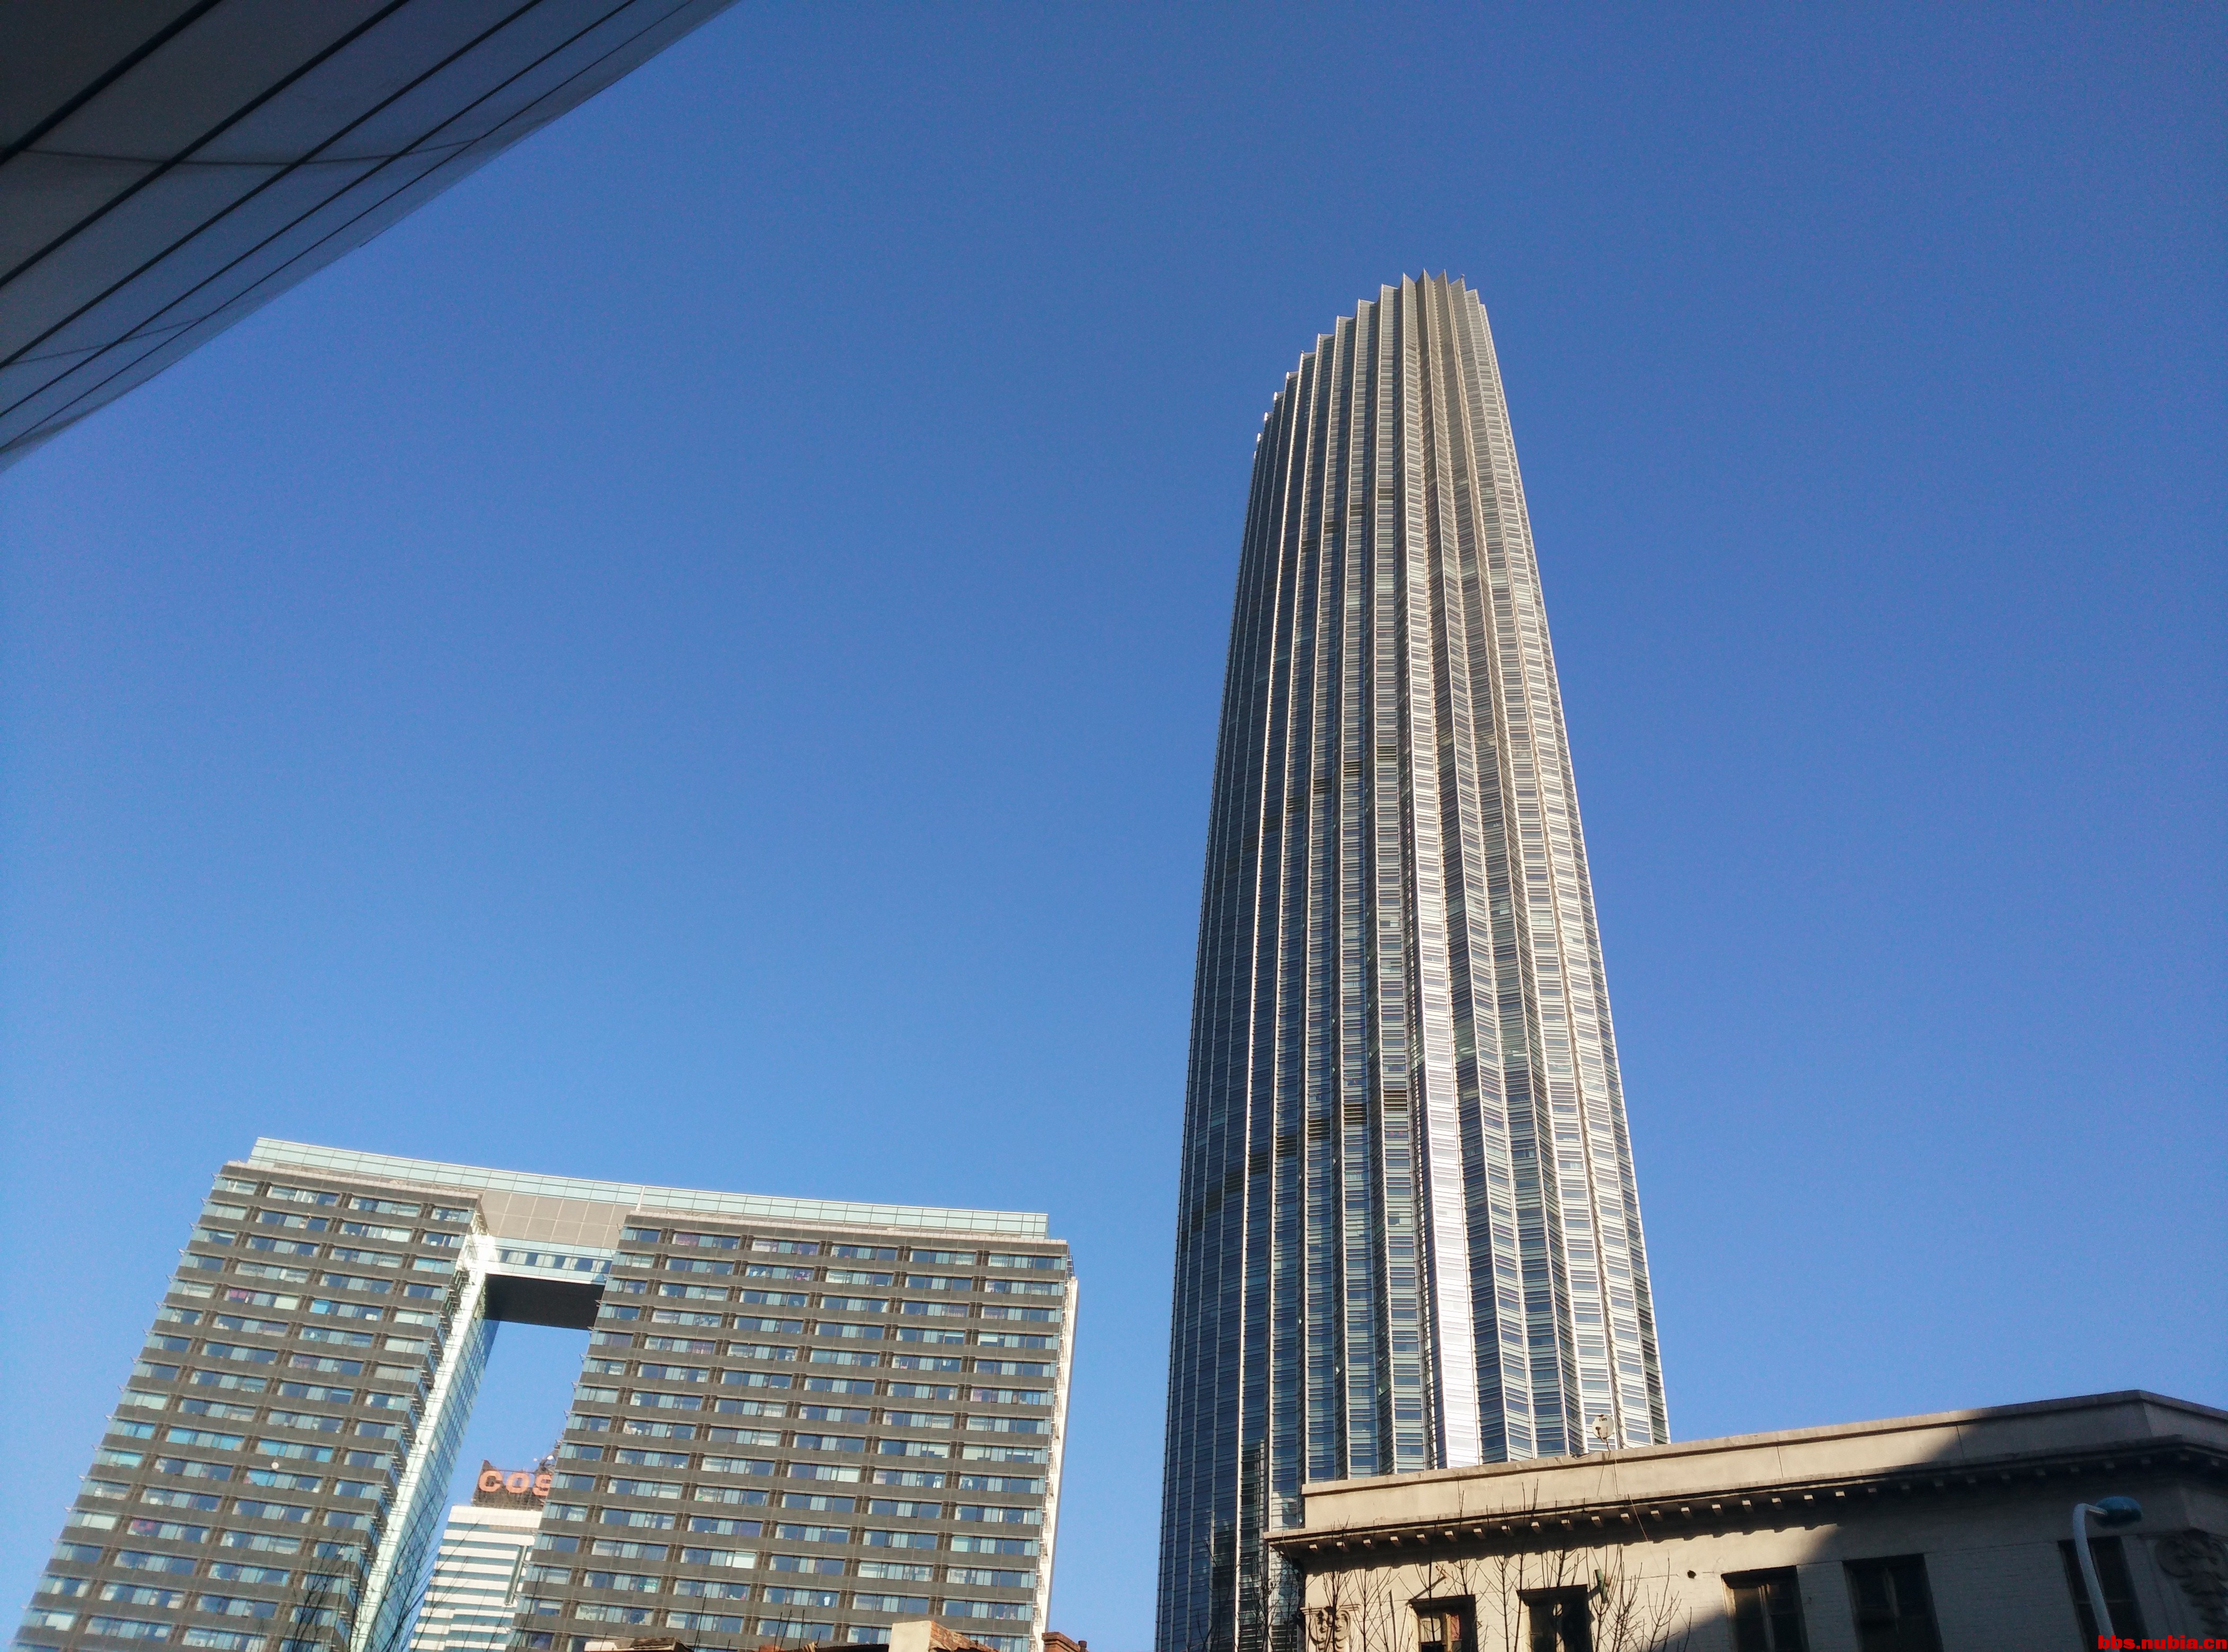 天津环球金融中心,和旁边的建筑被人们称为"津门津塔"